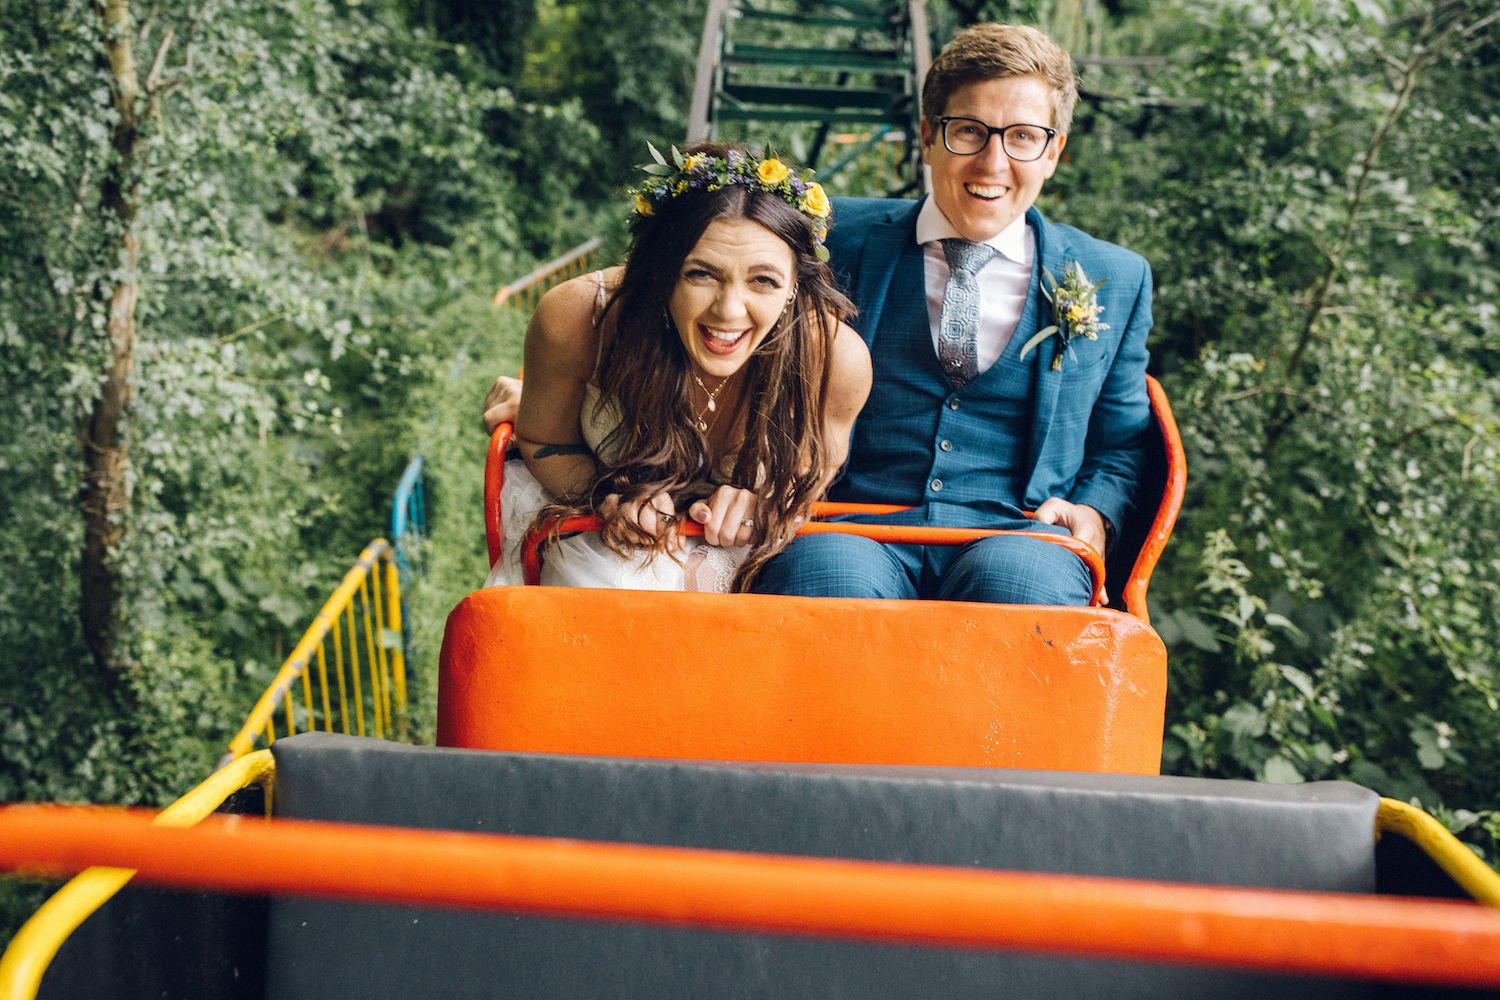 Marleybrook wedding roller coaster 